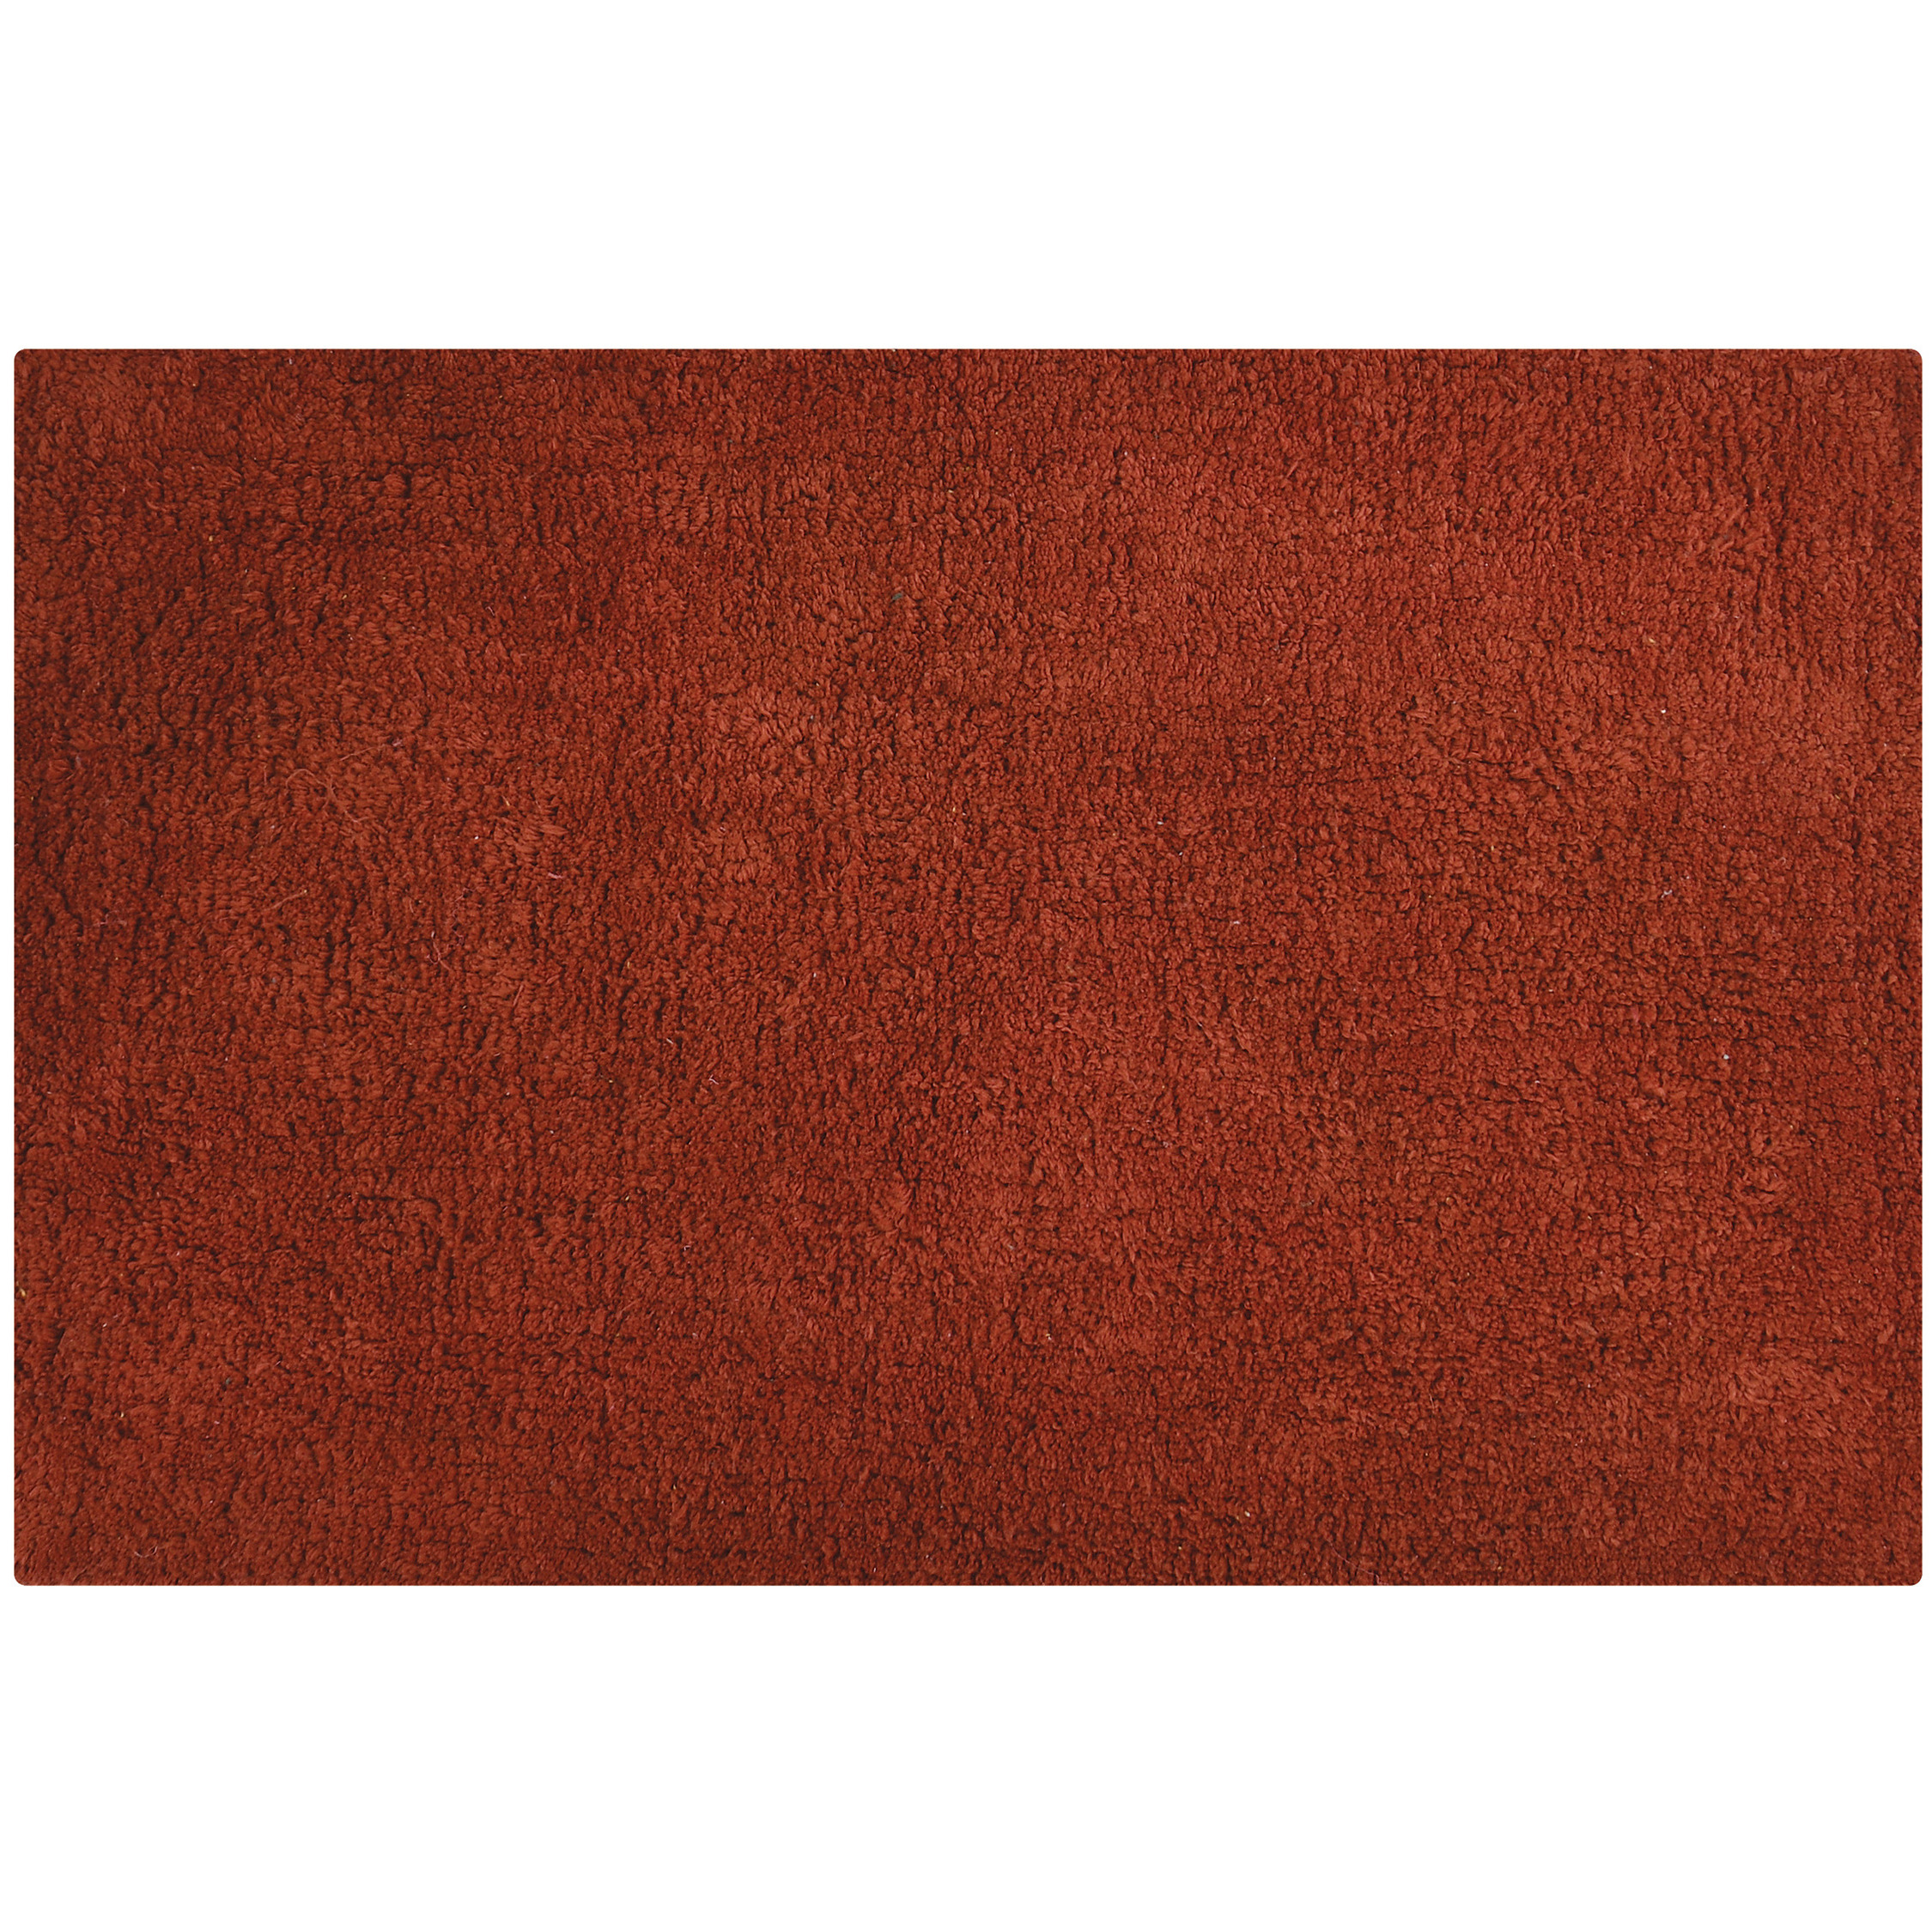 Badkamerkleedje-badmat tapijtje voor op de vloer terracotta 45 x 70 cm